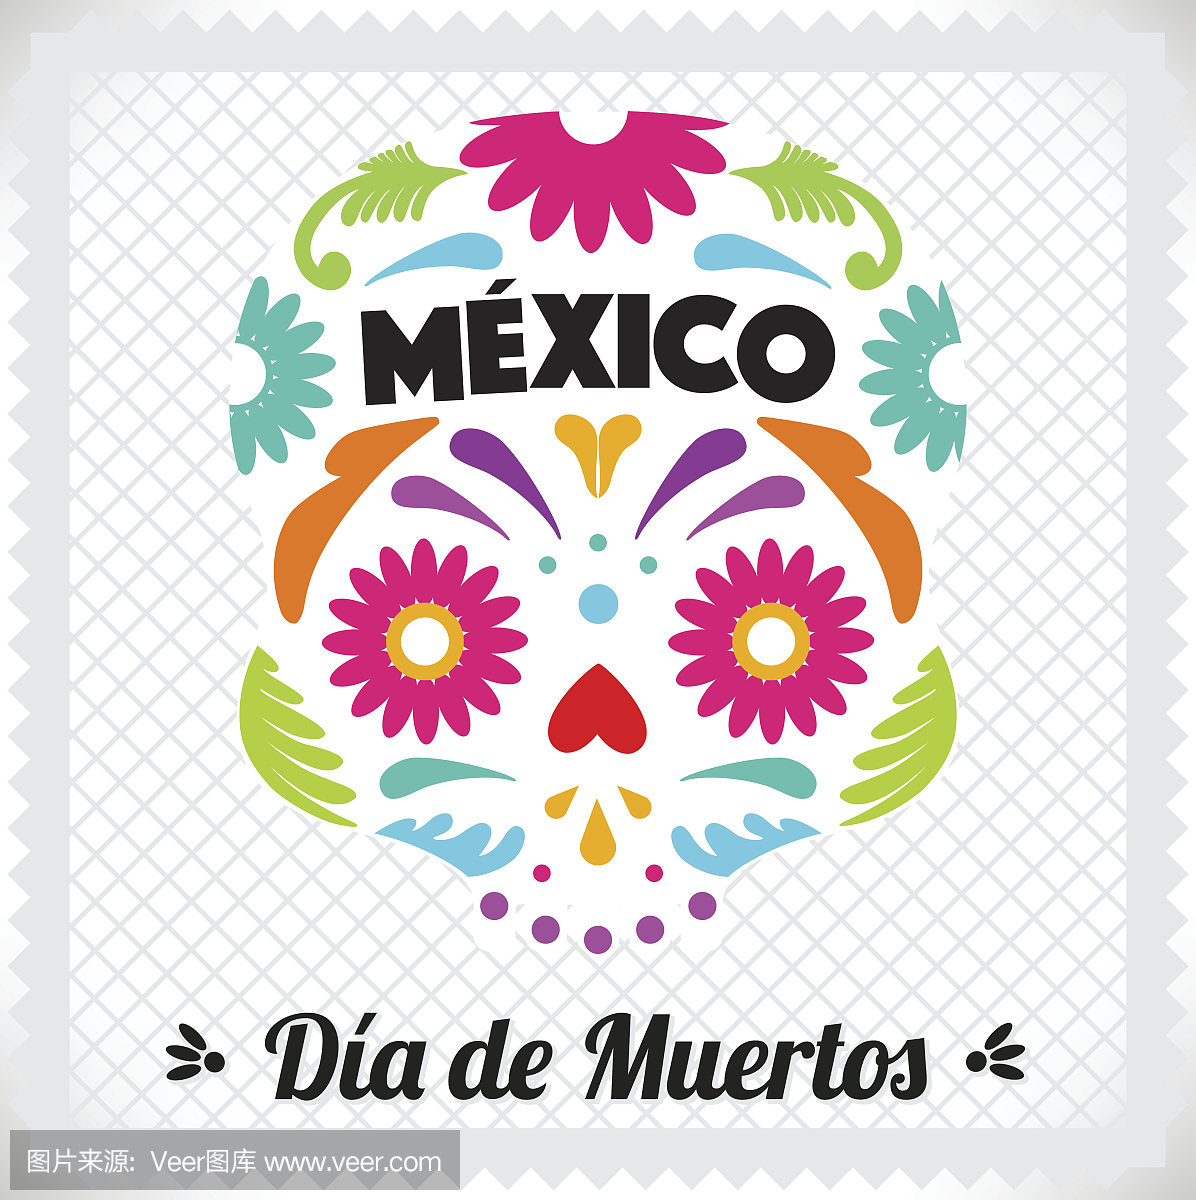 墨西哥文化,墨西哥人的,墨西哥风情,墨西哥节日